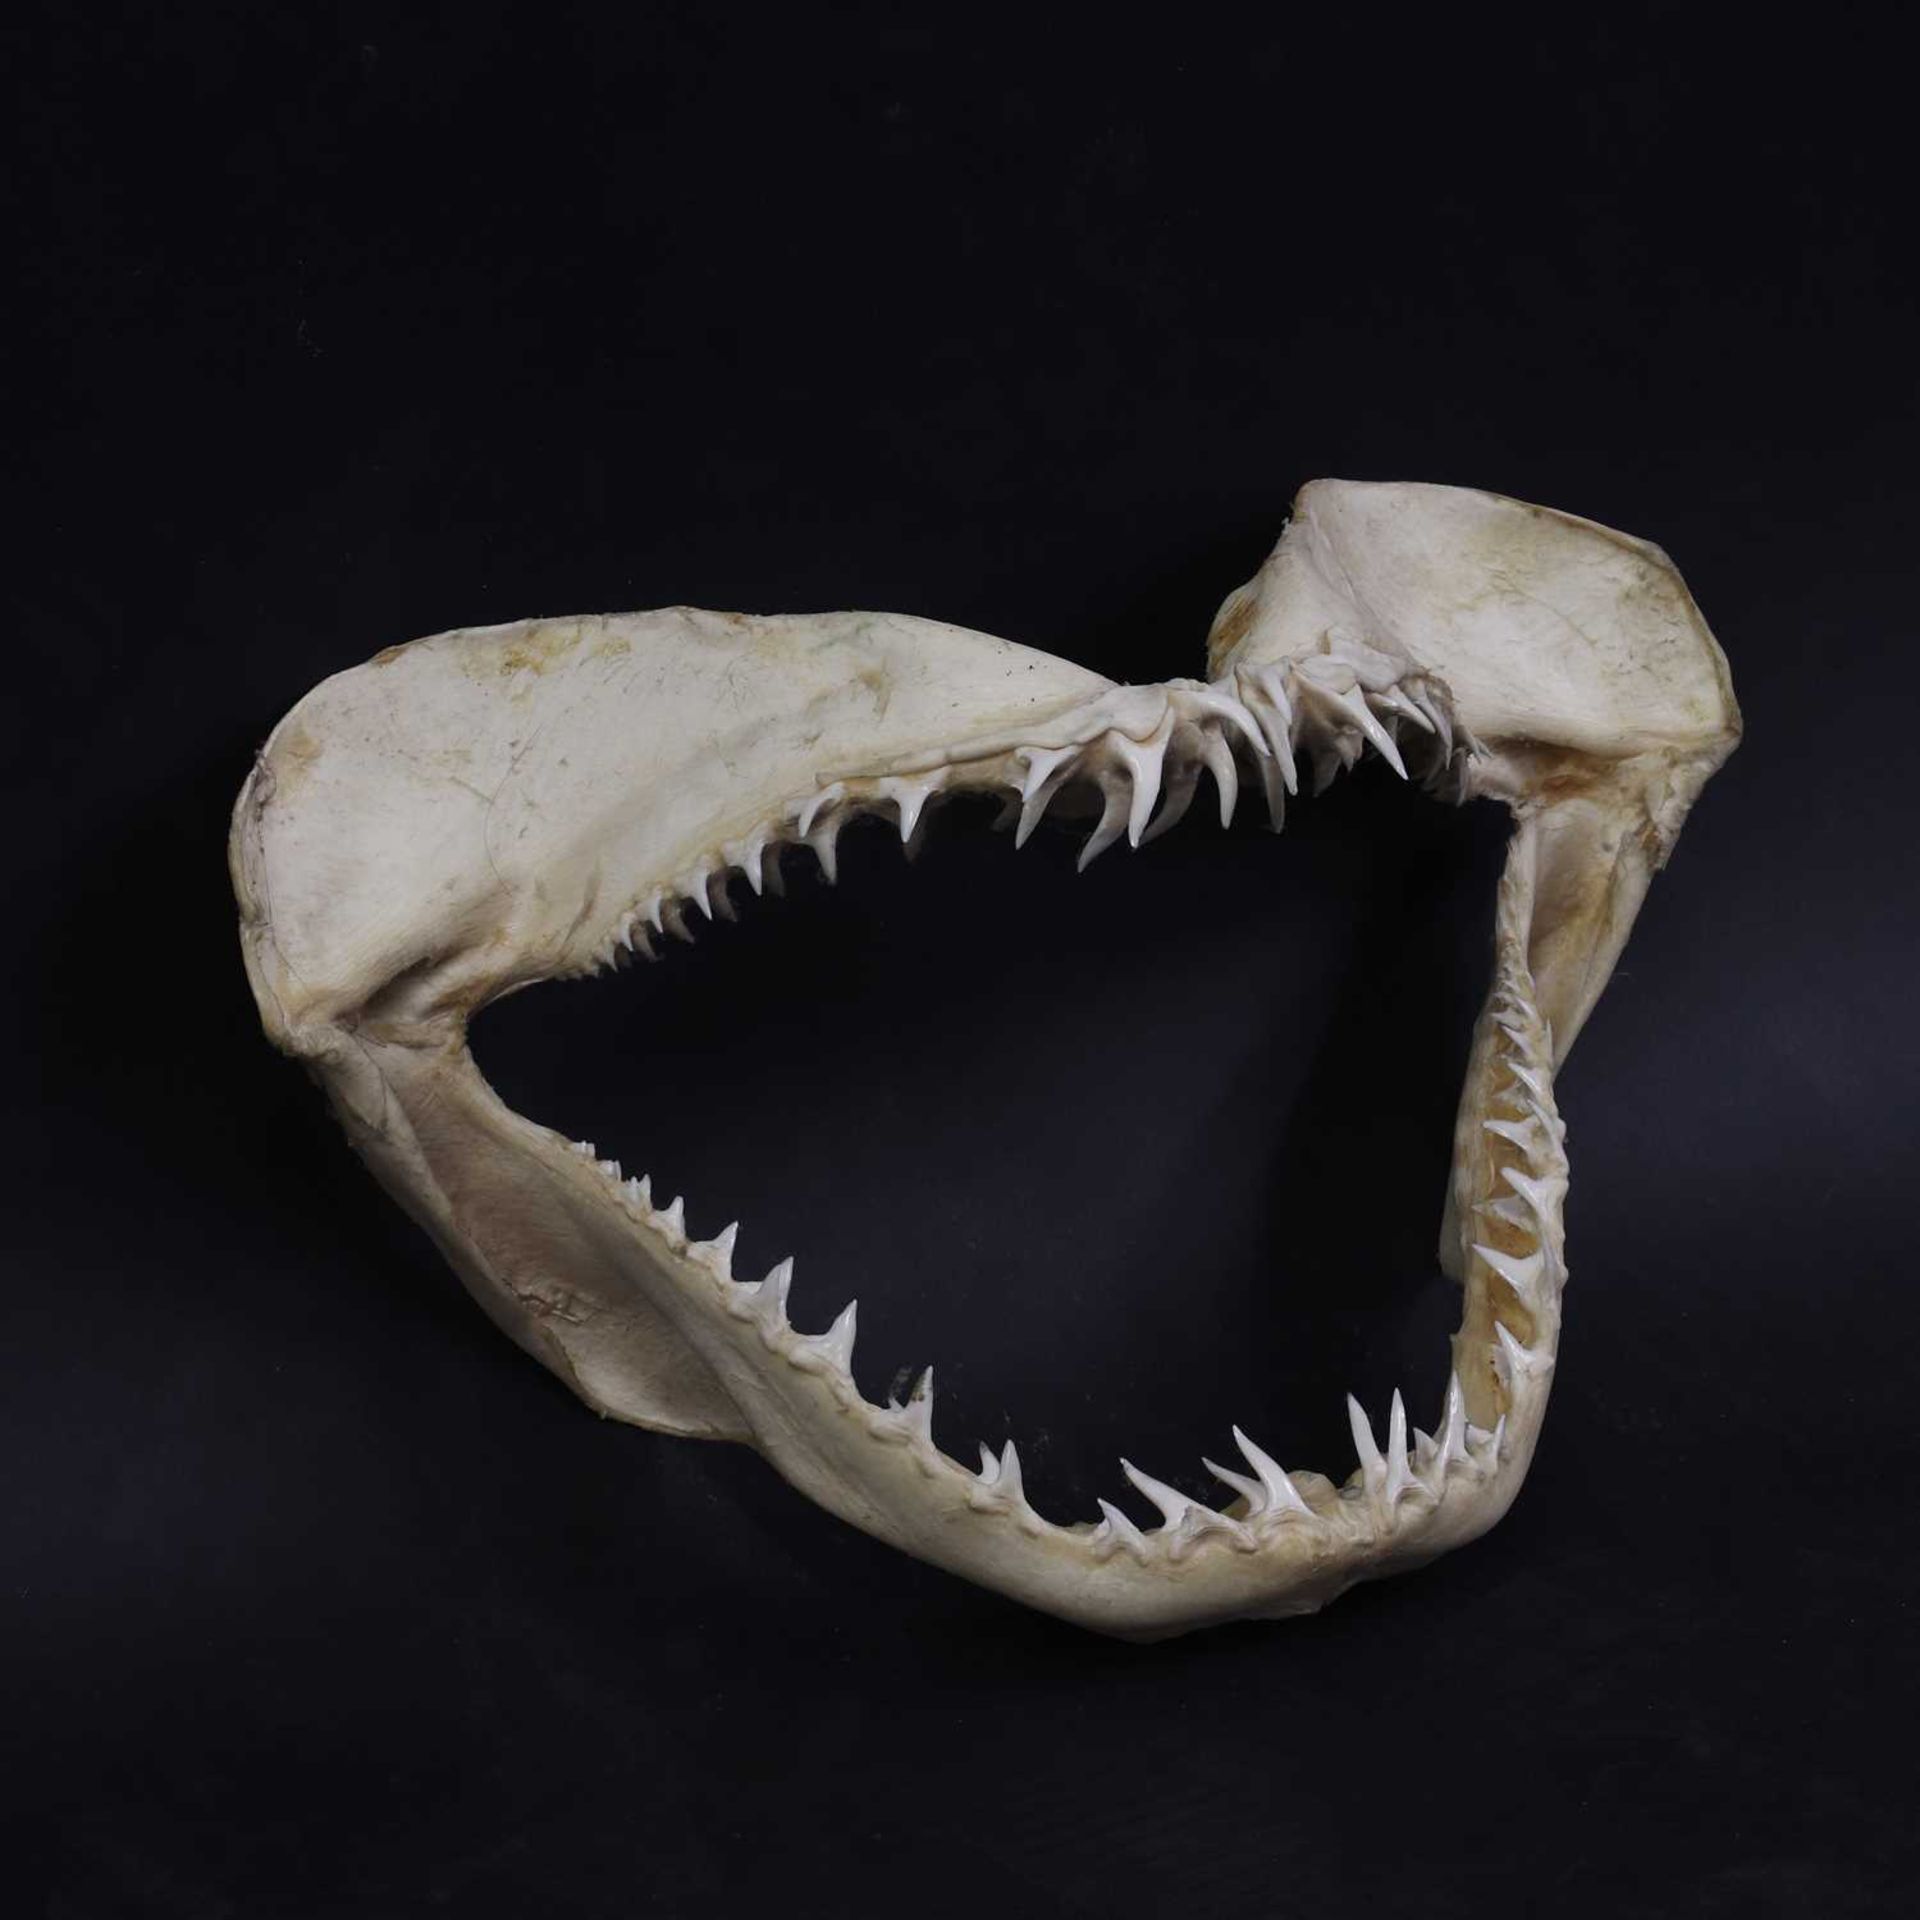 An articulated shark's jaw,